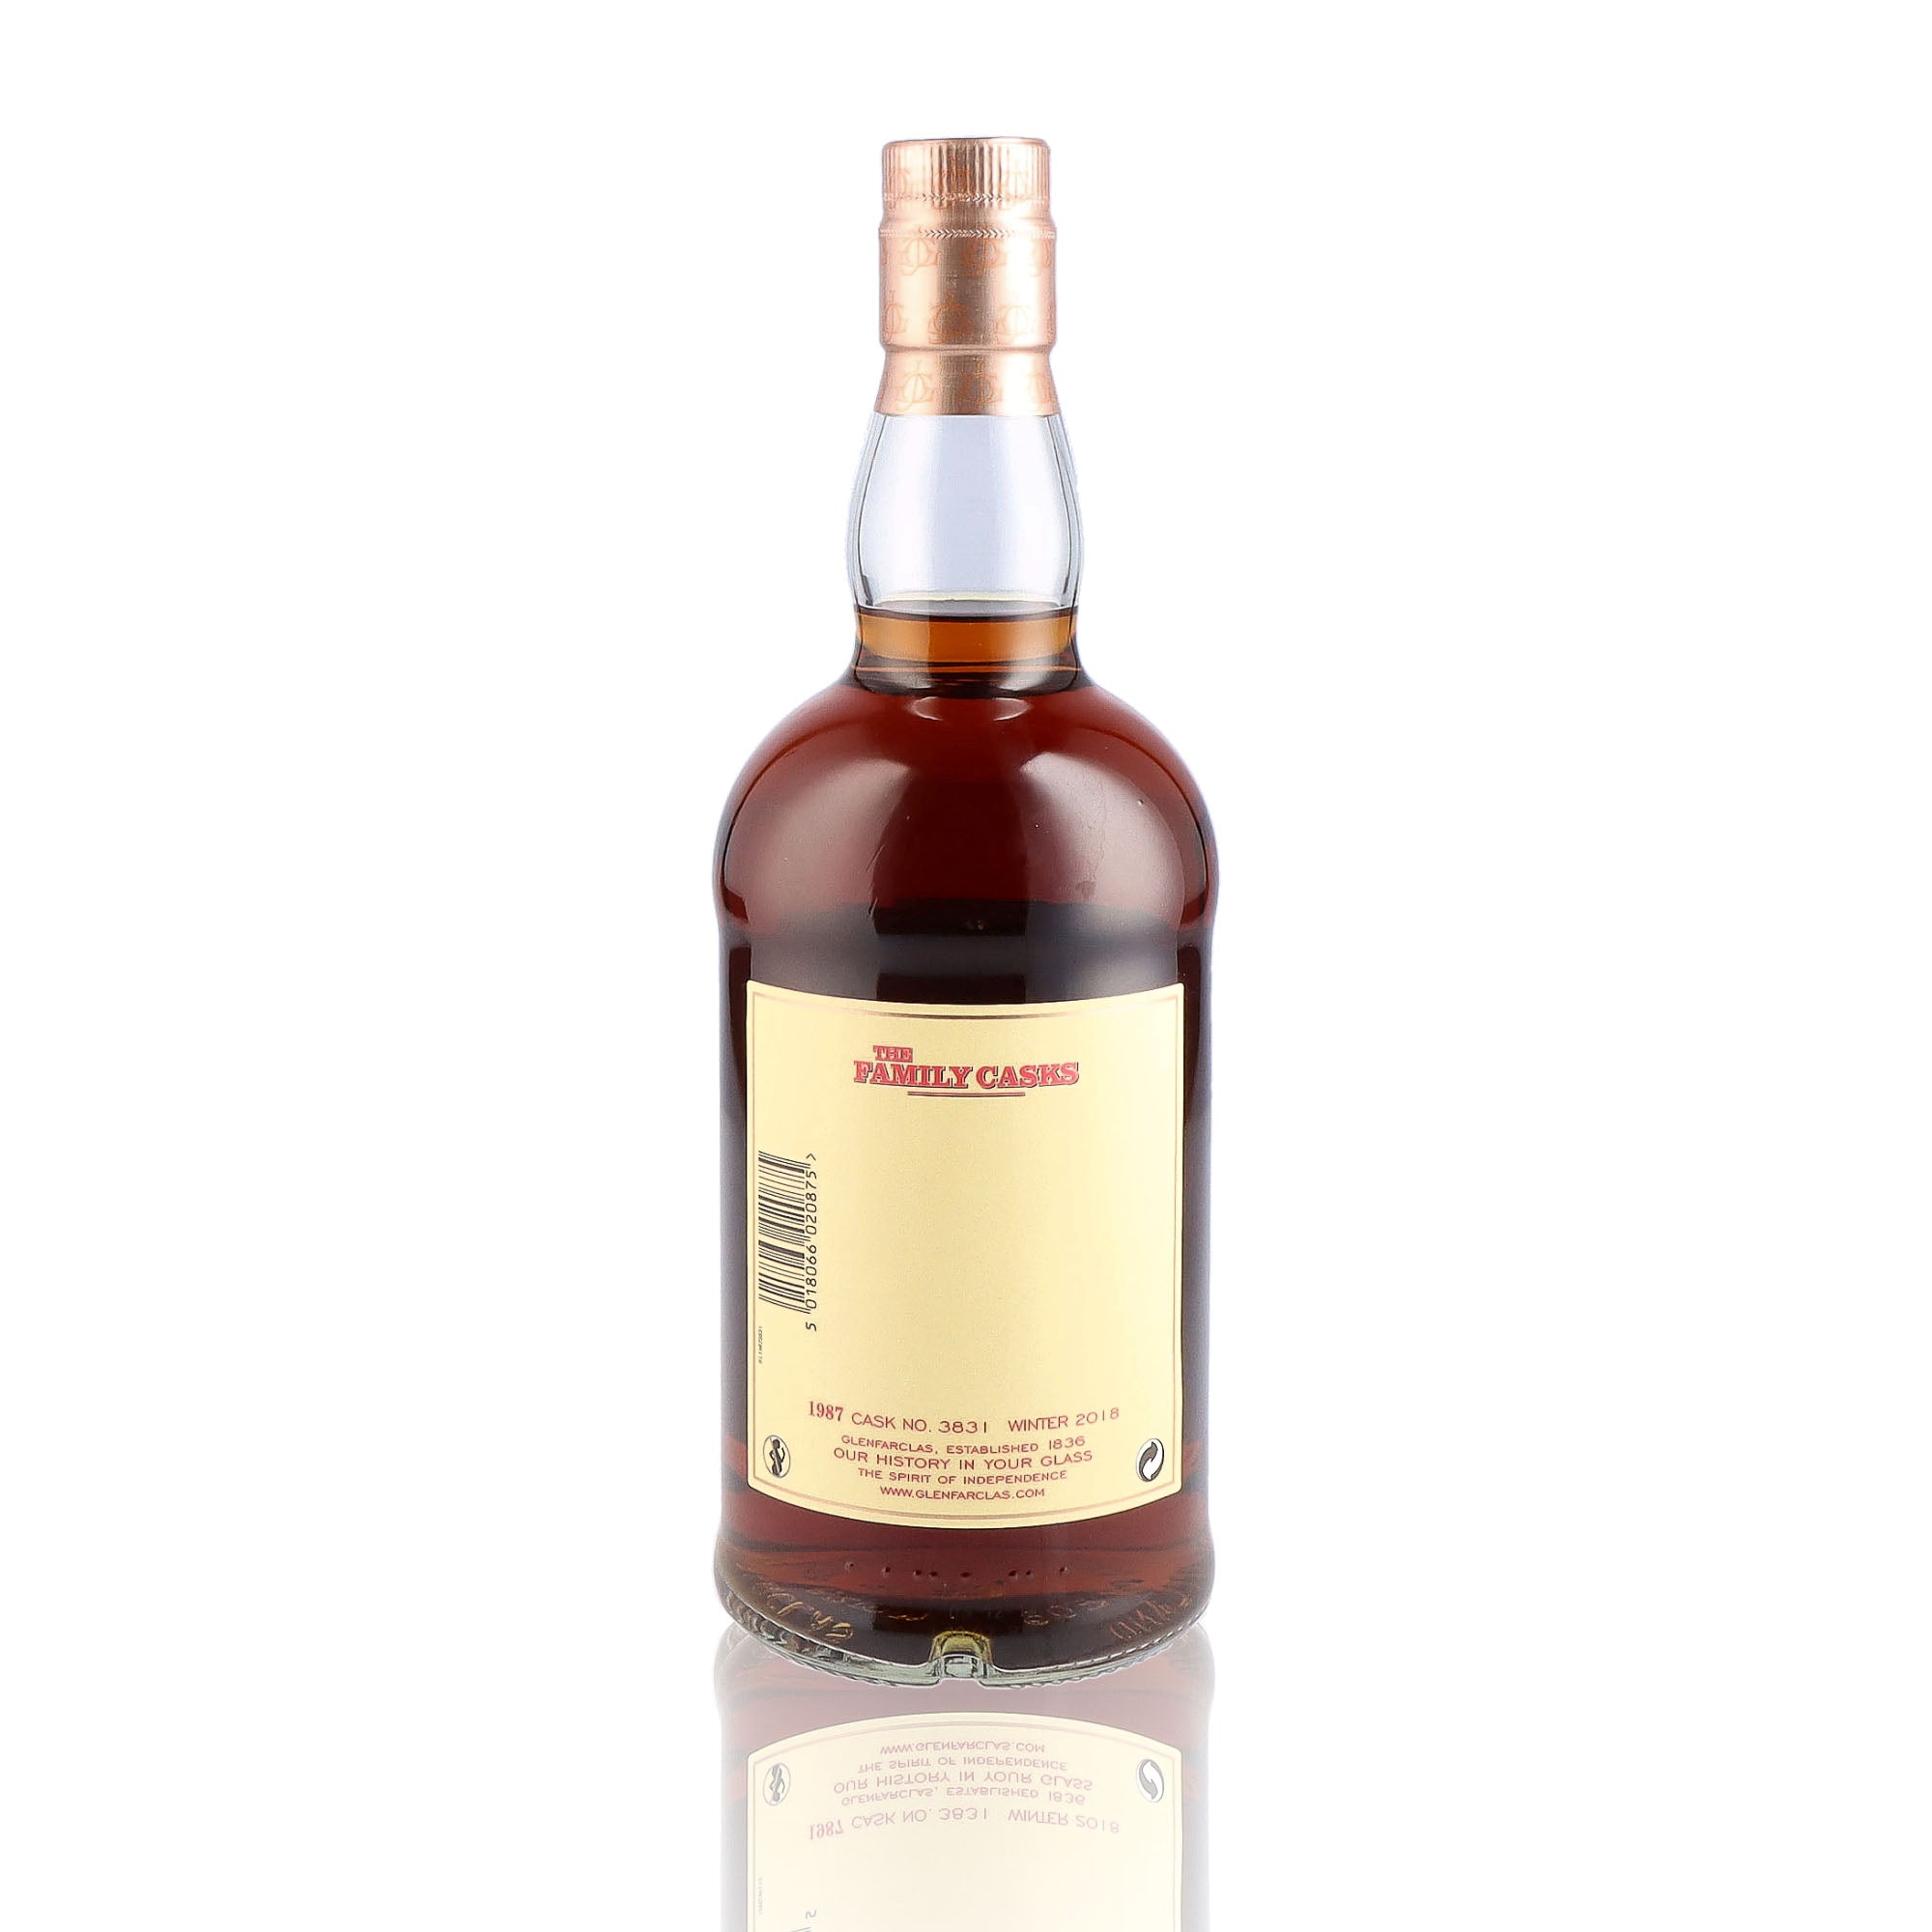 Une bouteille de Scotch Whisky Single Malt de la marque Glenfarclas, nommée The Family Casks, 31 ans d'âge, du millésime 1987.